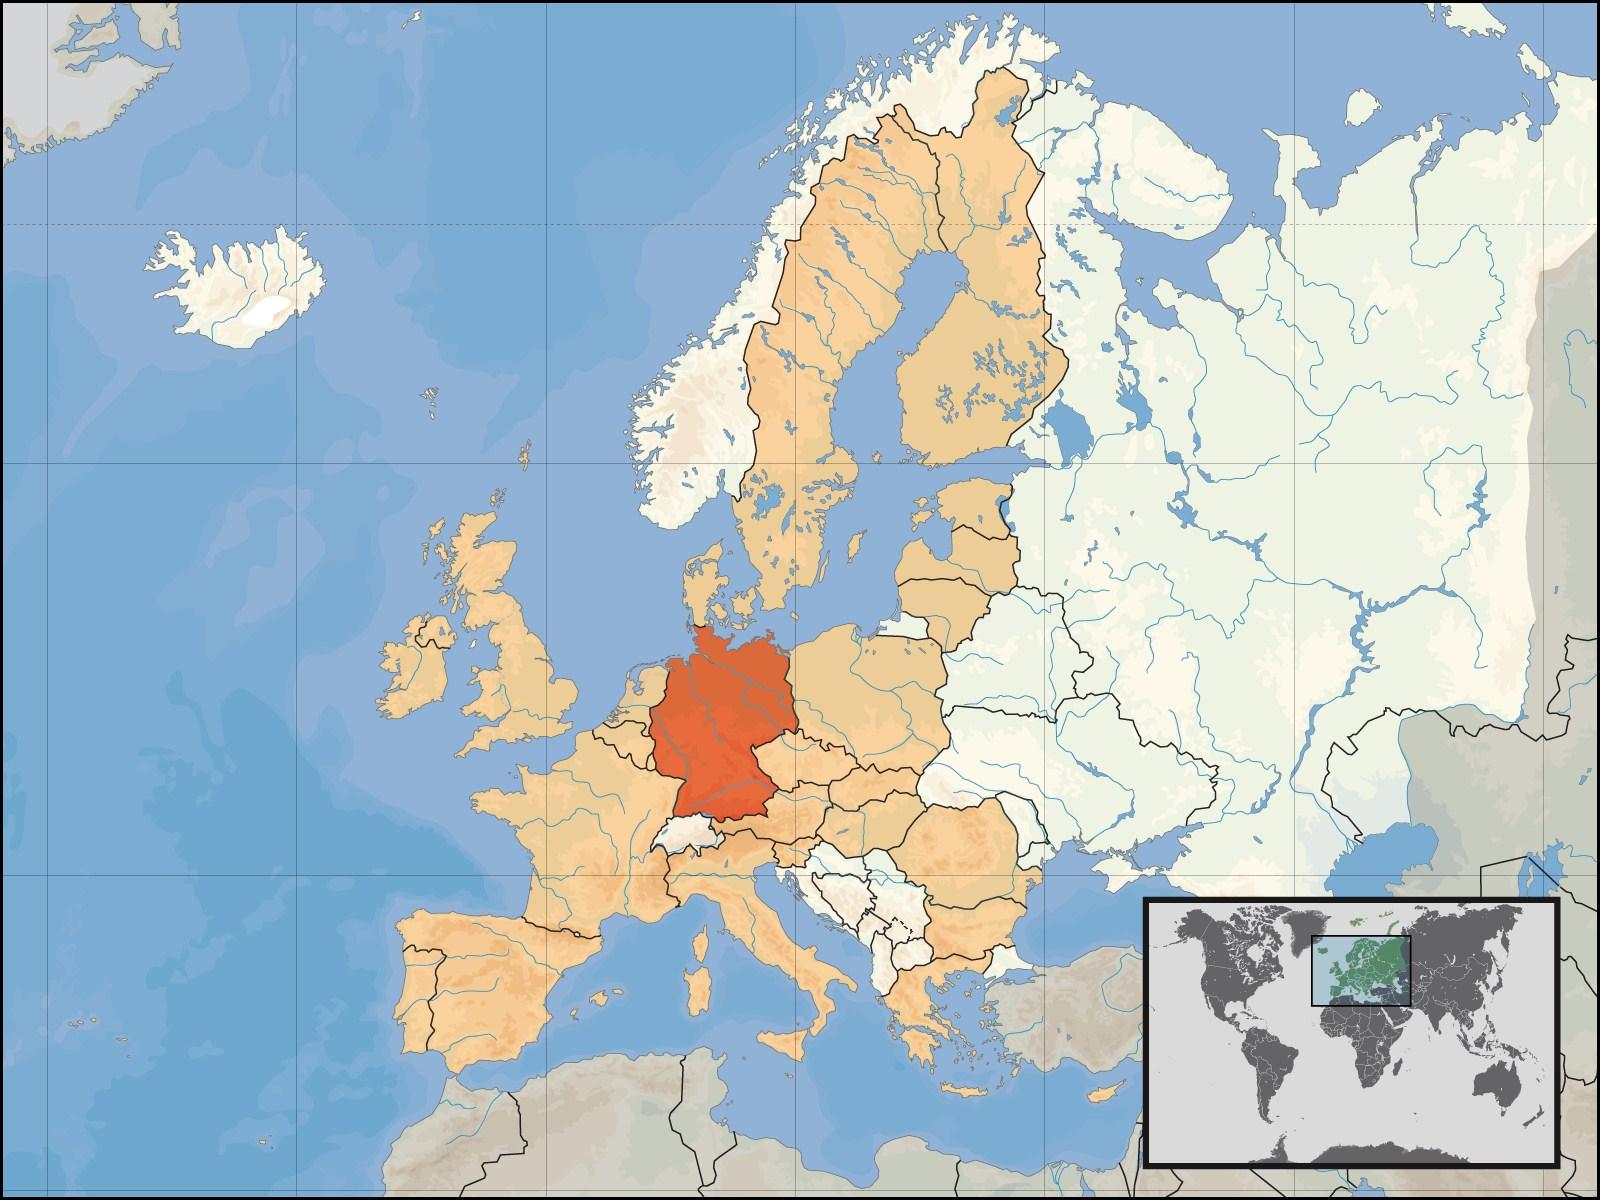 Afbeelding locatie Duitsland in EU 2008